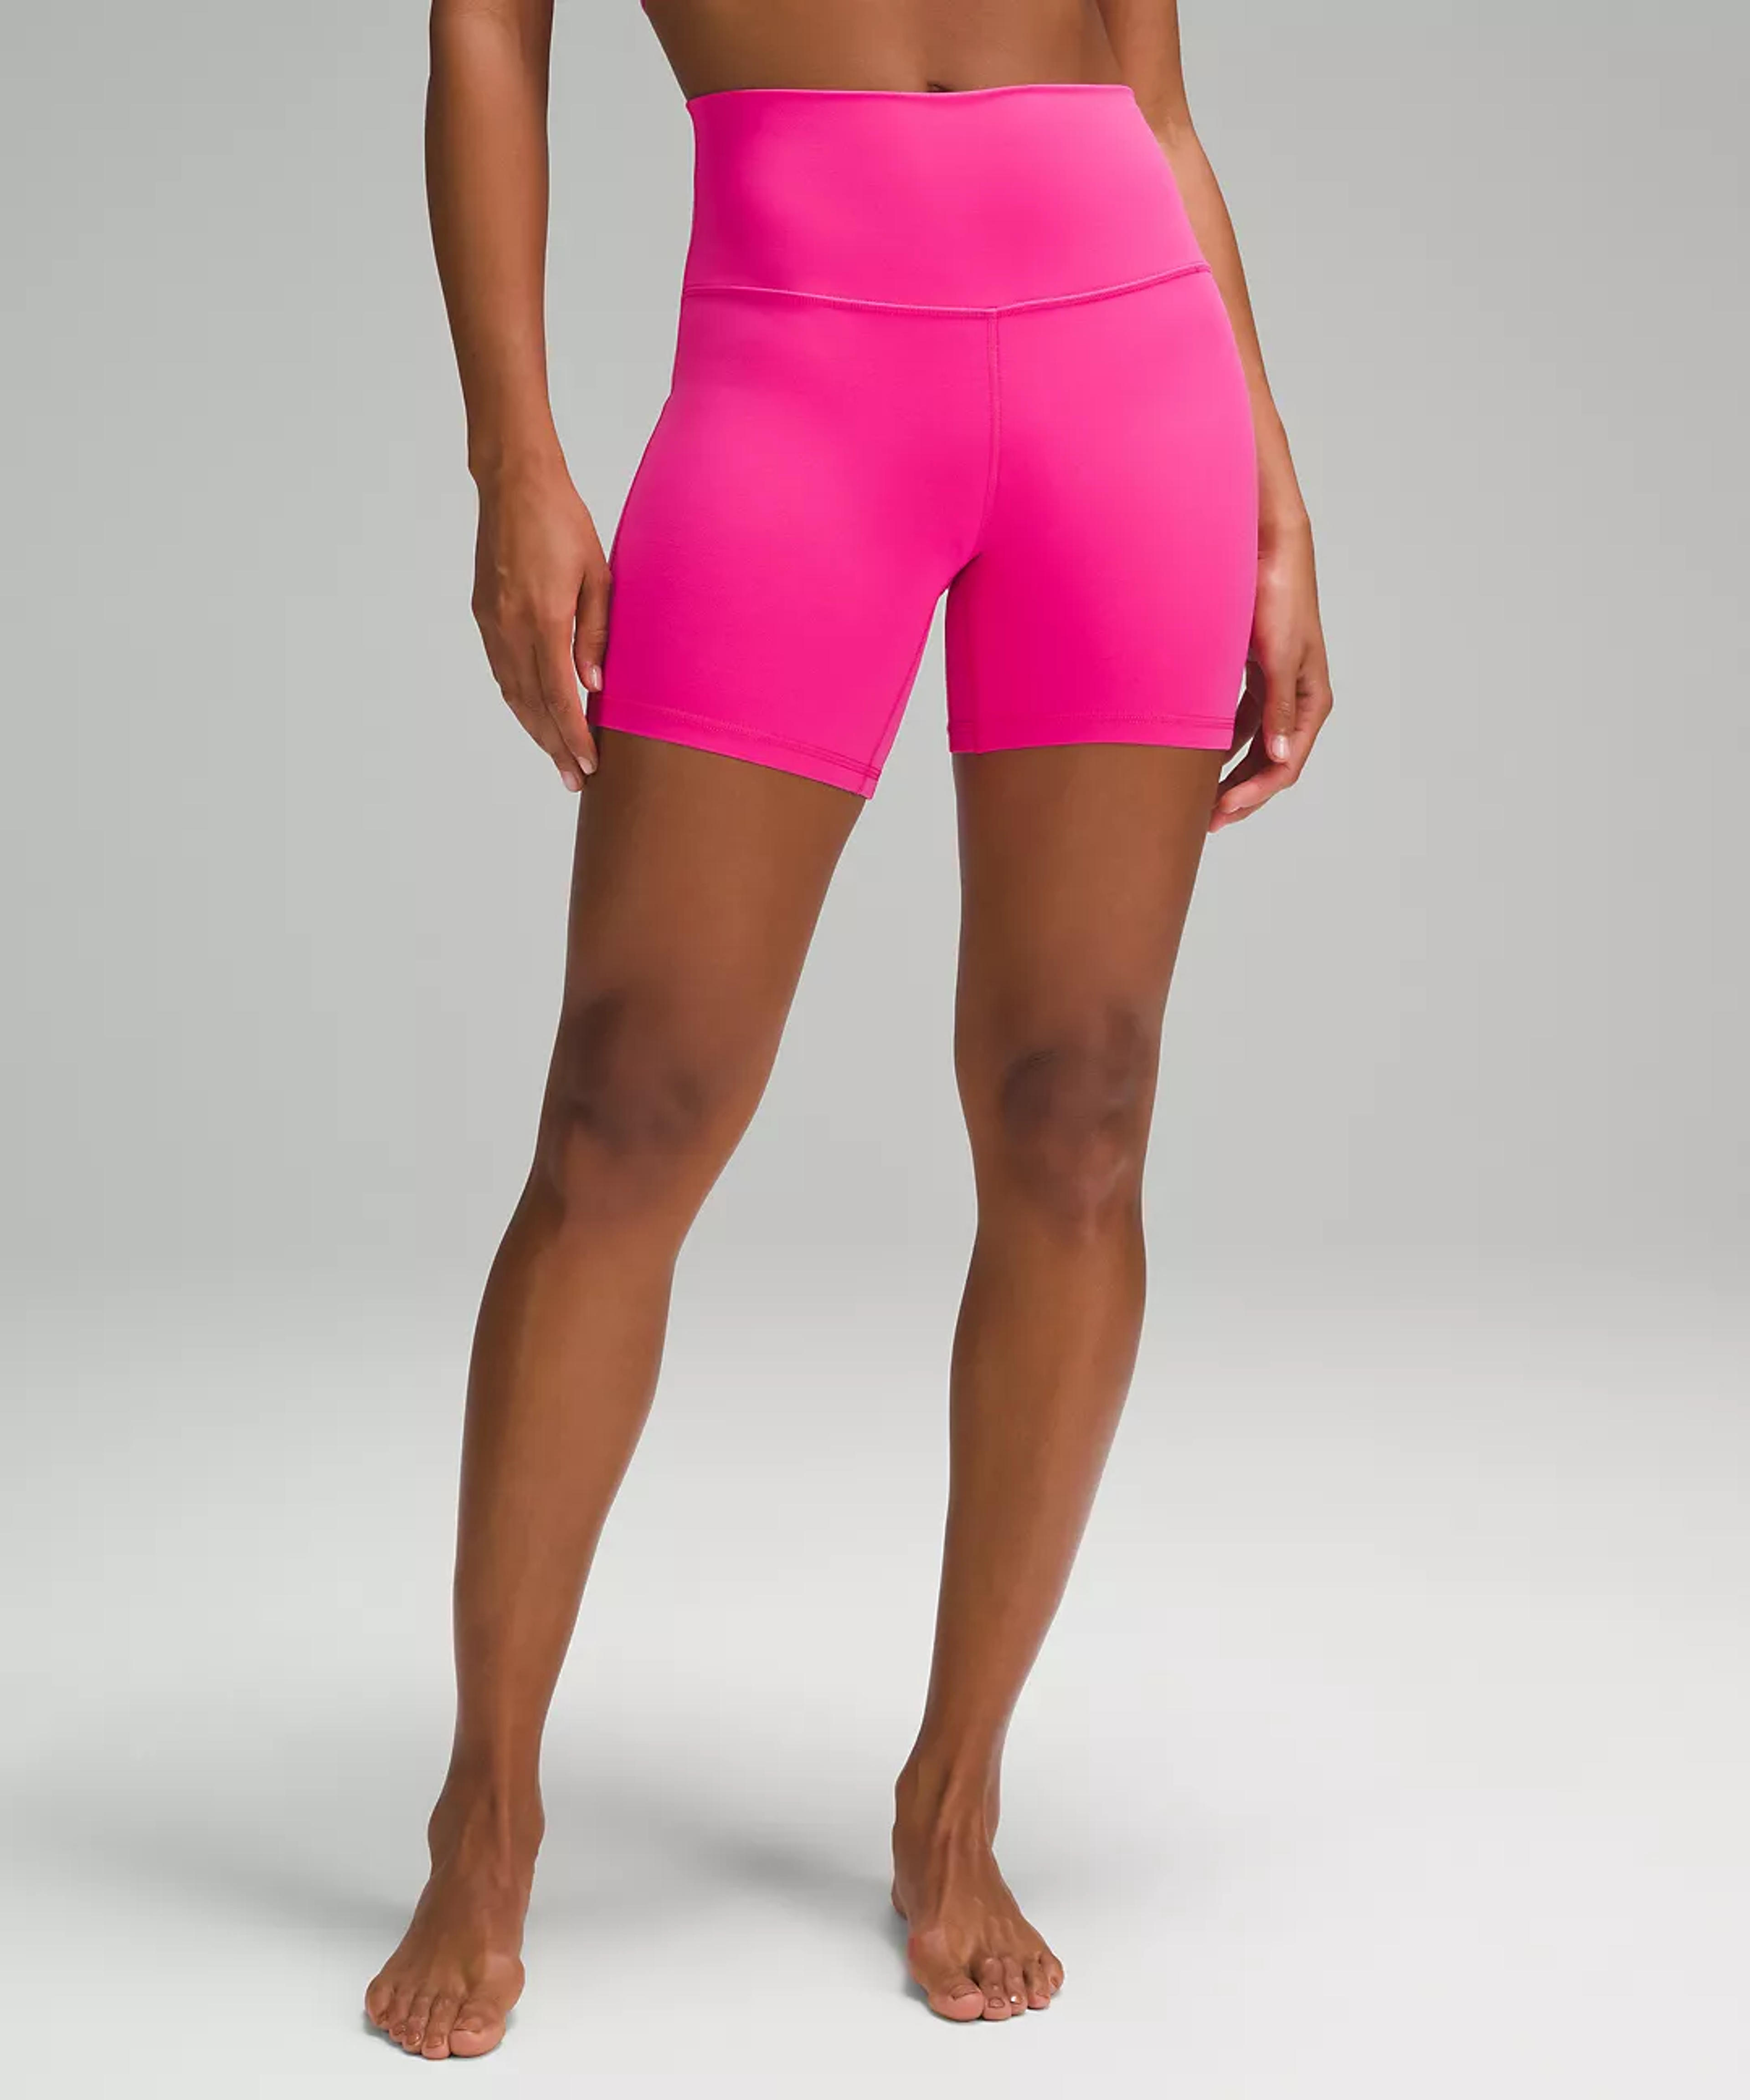 lululemon Align™ High-Rise Short 6" | Women's Shorts | lululemon